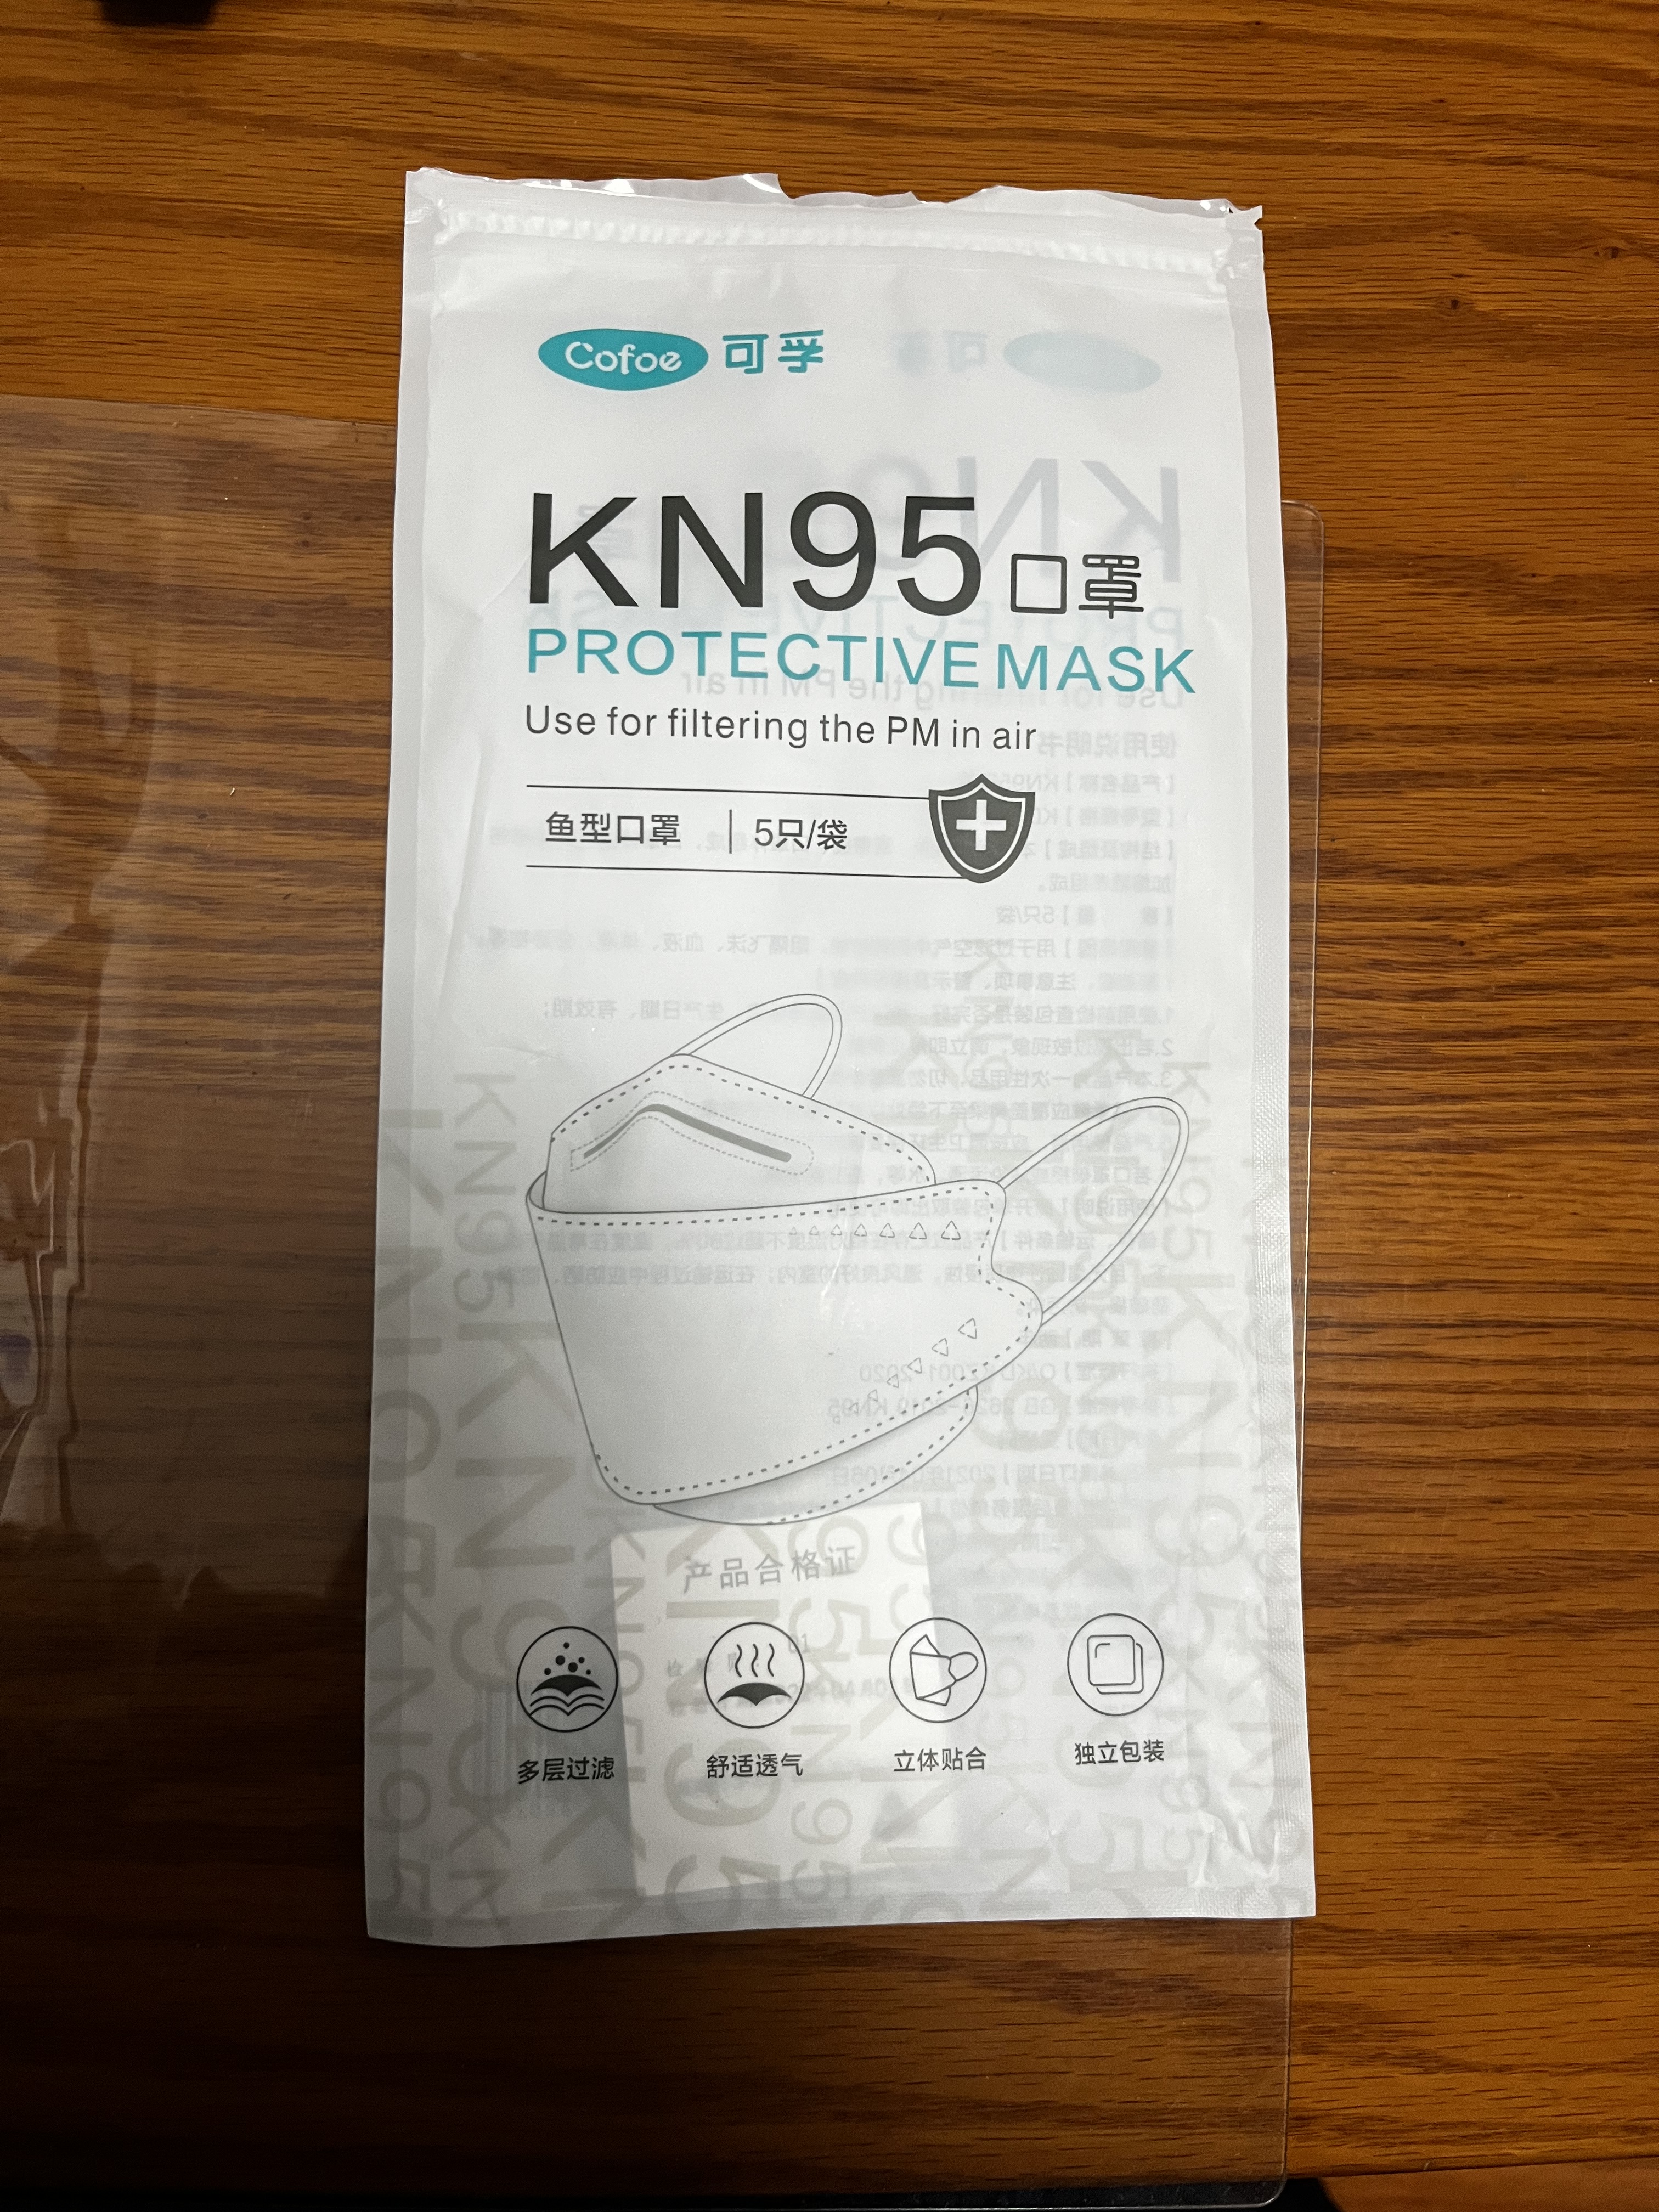 疫情期间使用的KN95口罩